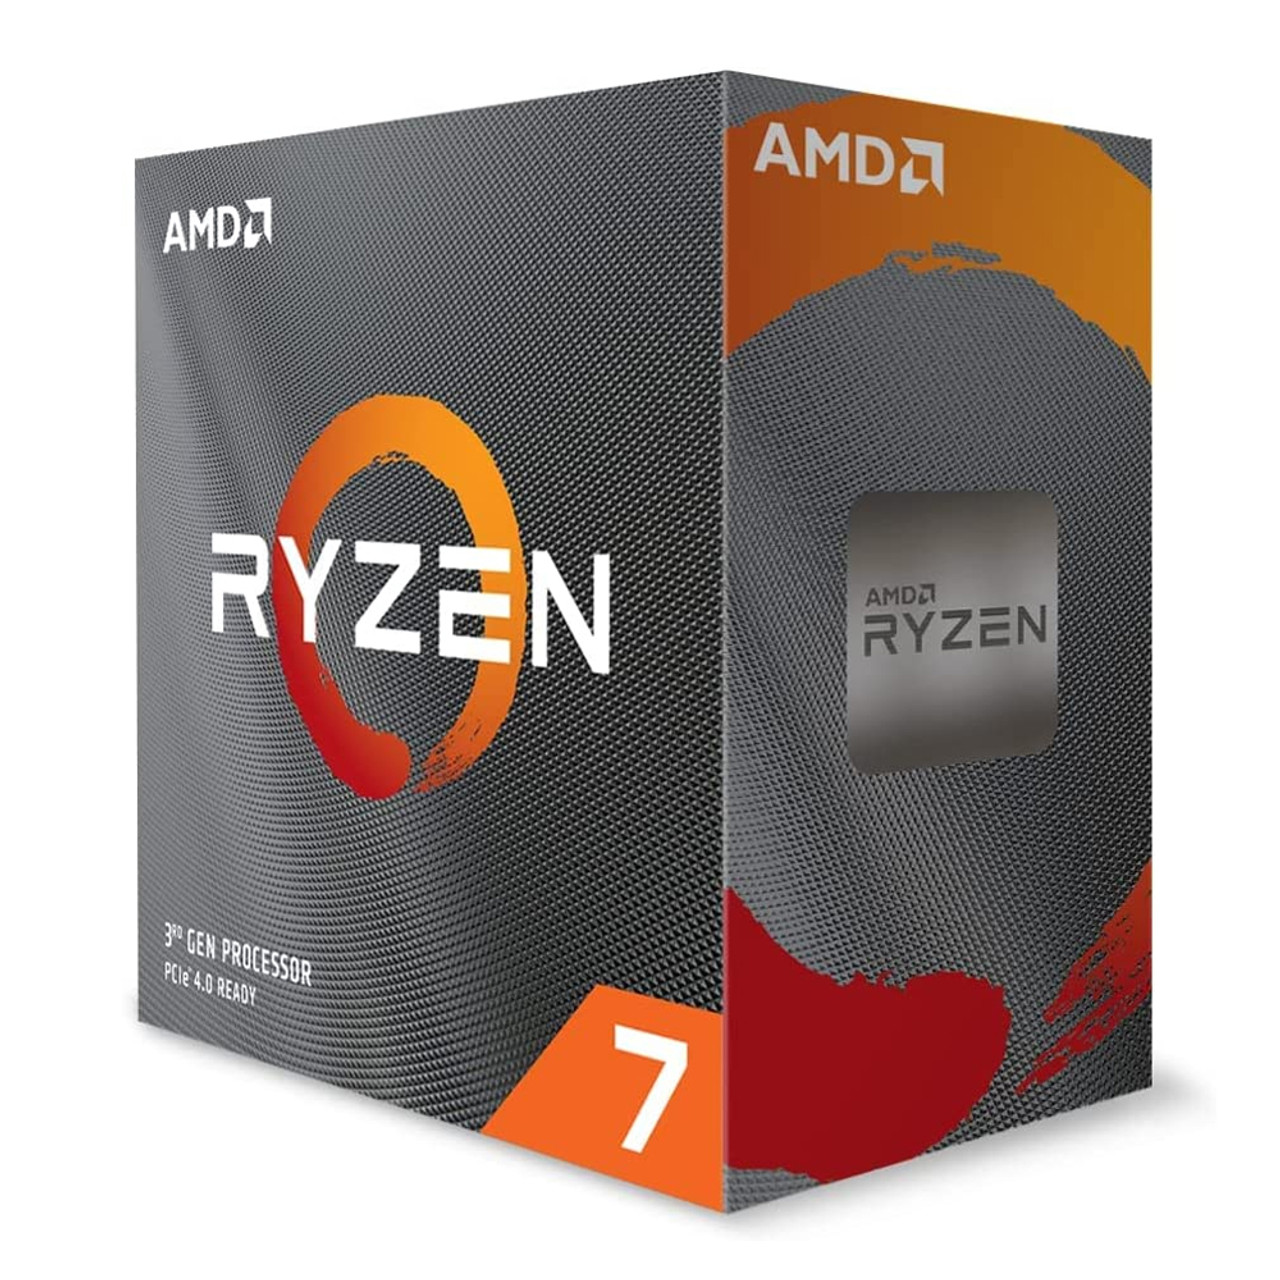 AMD Ryzen 7 5700X 8-Core, 16-Thread Unlocked Desktop Processor $159.80 + Free Shipping